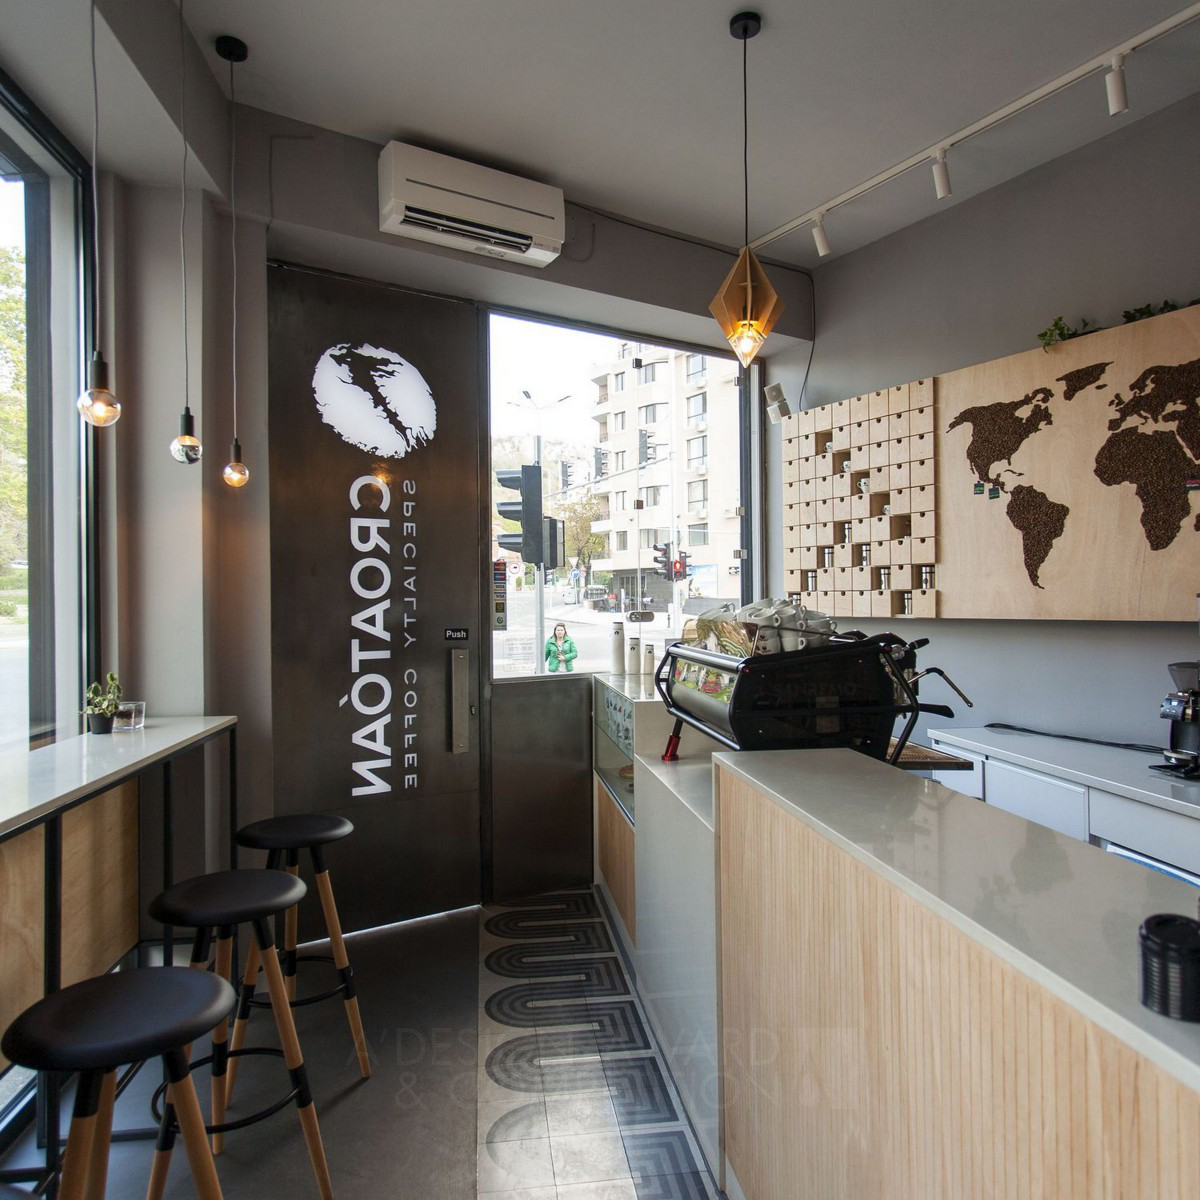 Croatoan cafeteria Caffeteria and shop by Vladislav Kostadinov